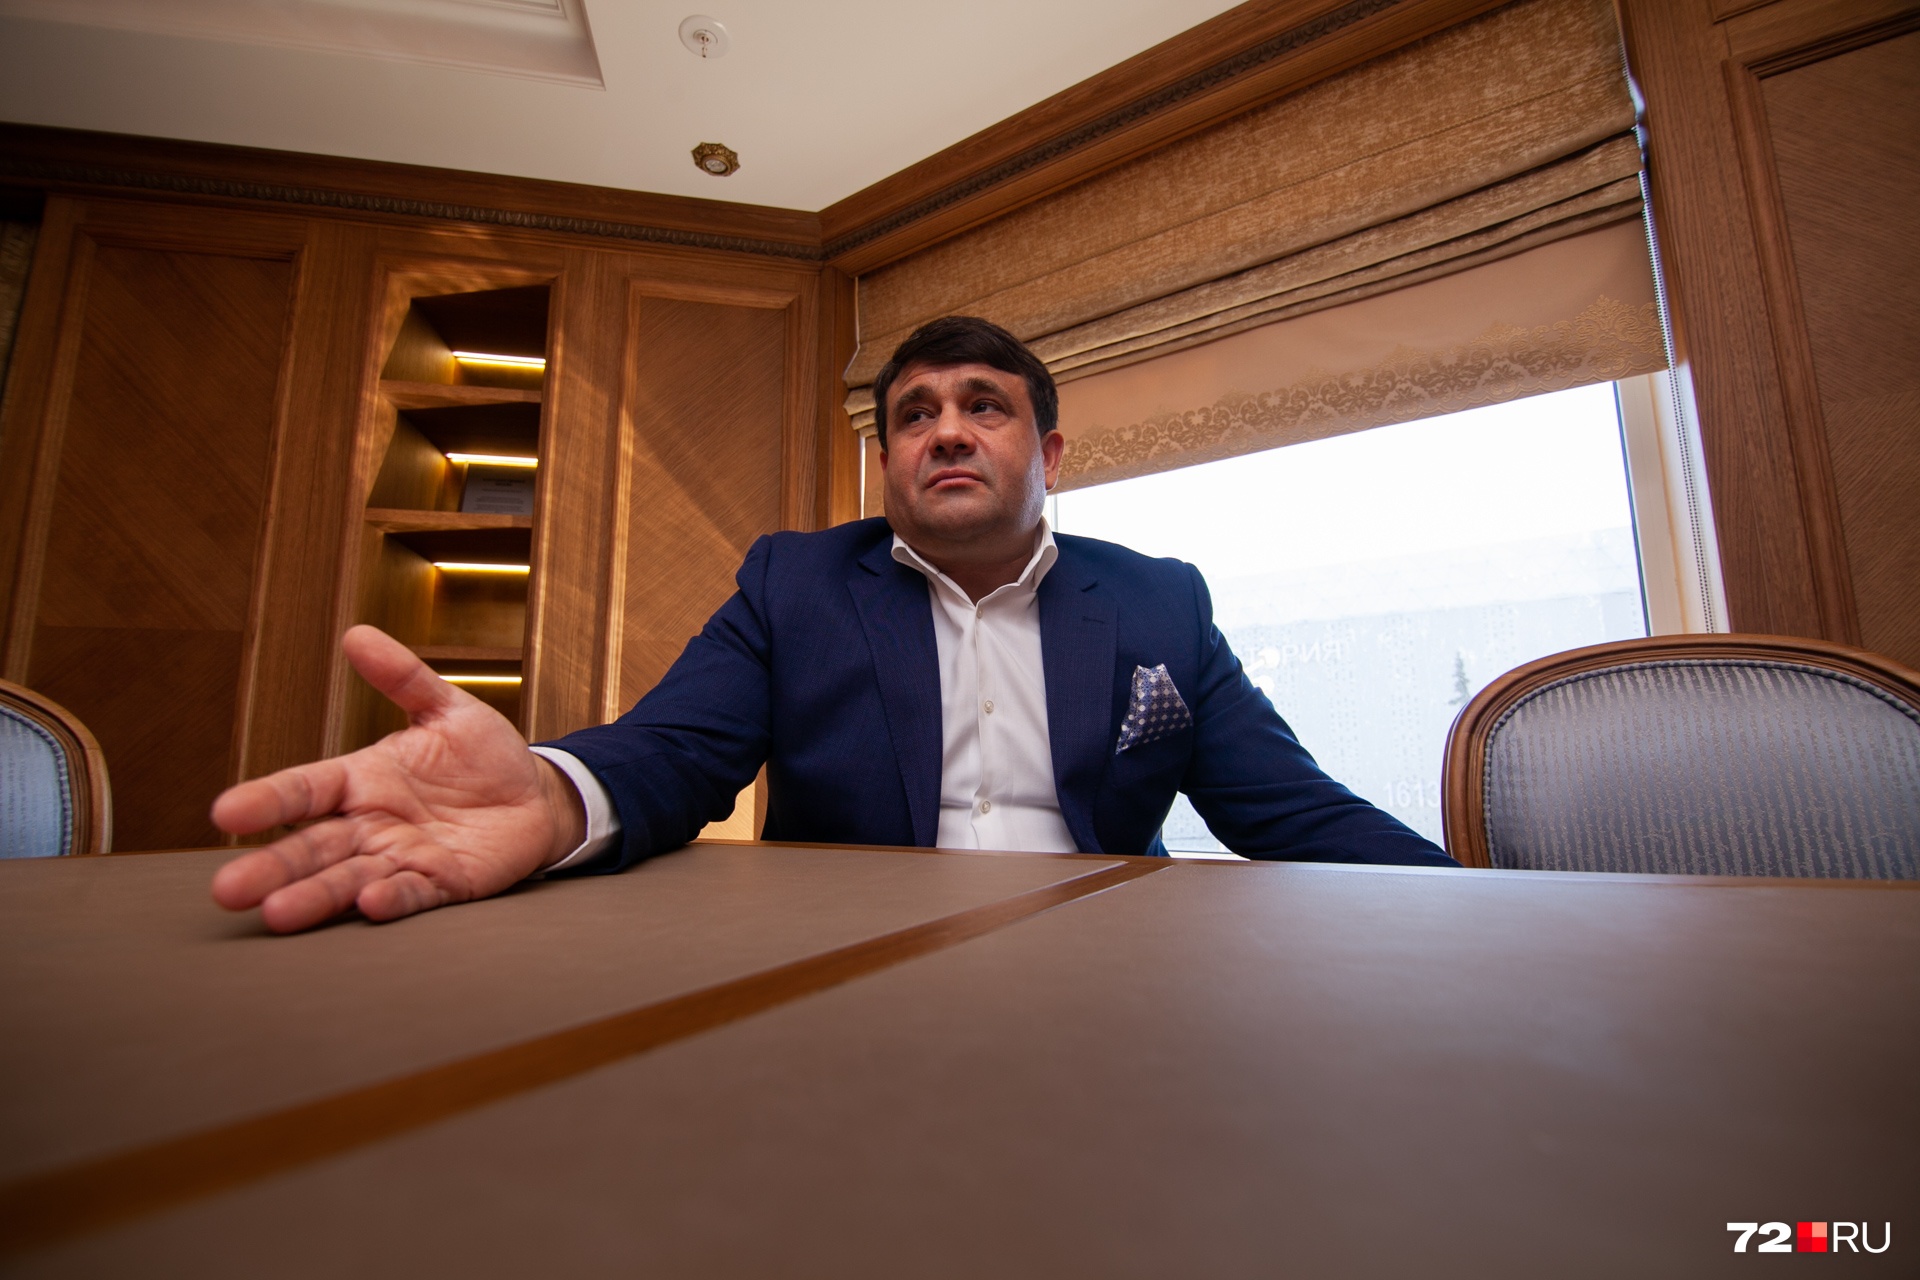 Пискайкин является бессменным лидером регионального отделения «Справедливая Россия» в Тюменской области